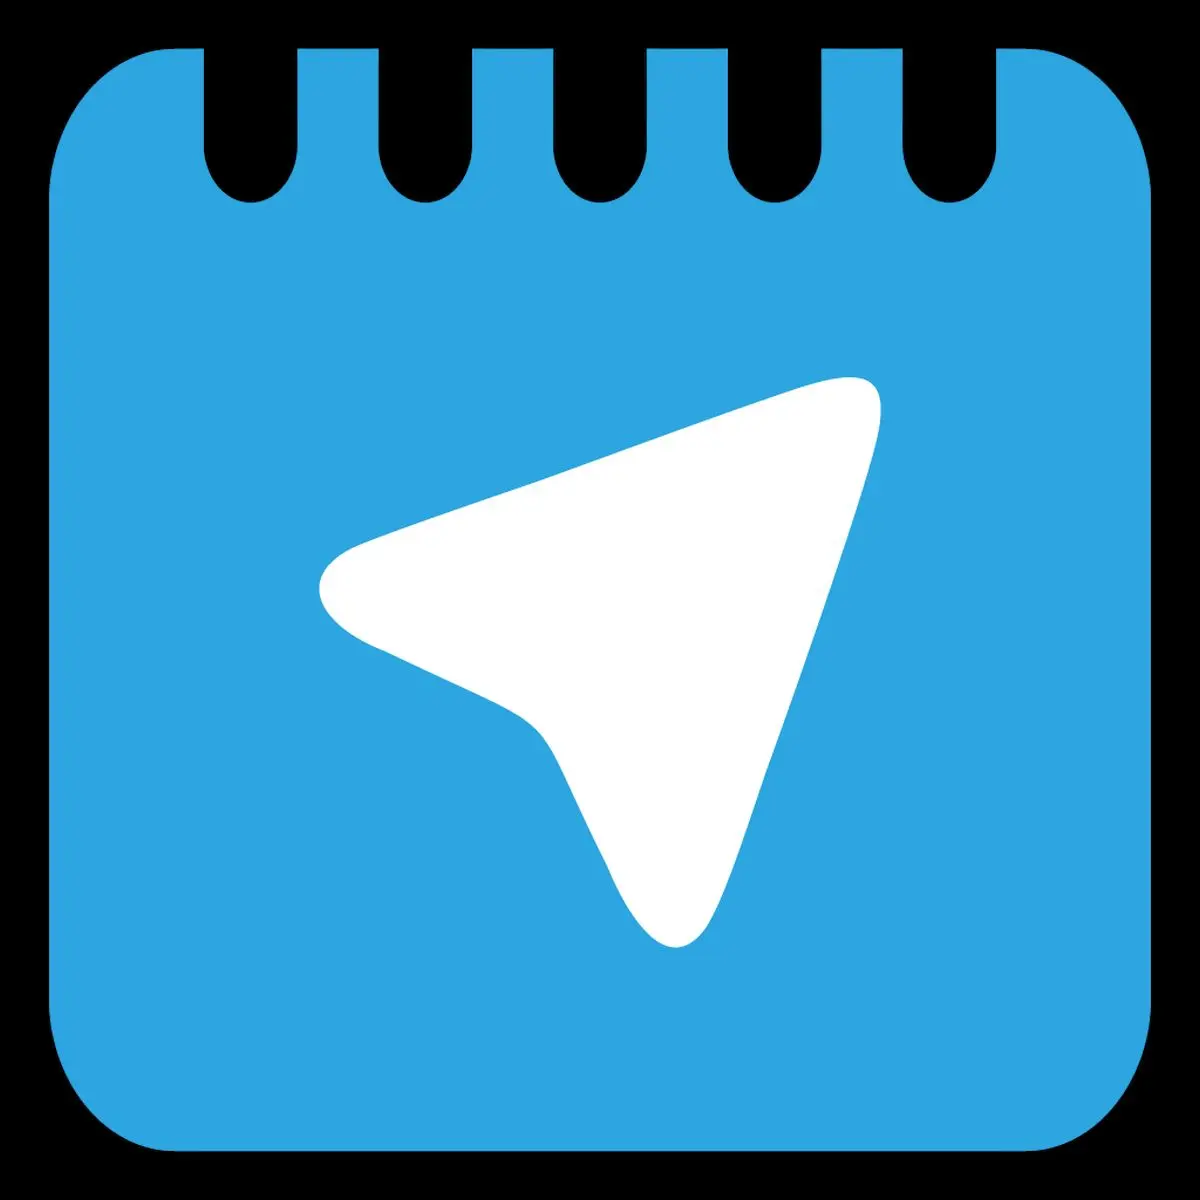 تلگرام صوتی در ایران فعال شد/ اعمال محدودیت ساعتی پس از راه‌اندازی